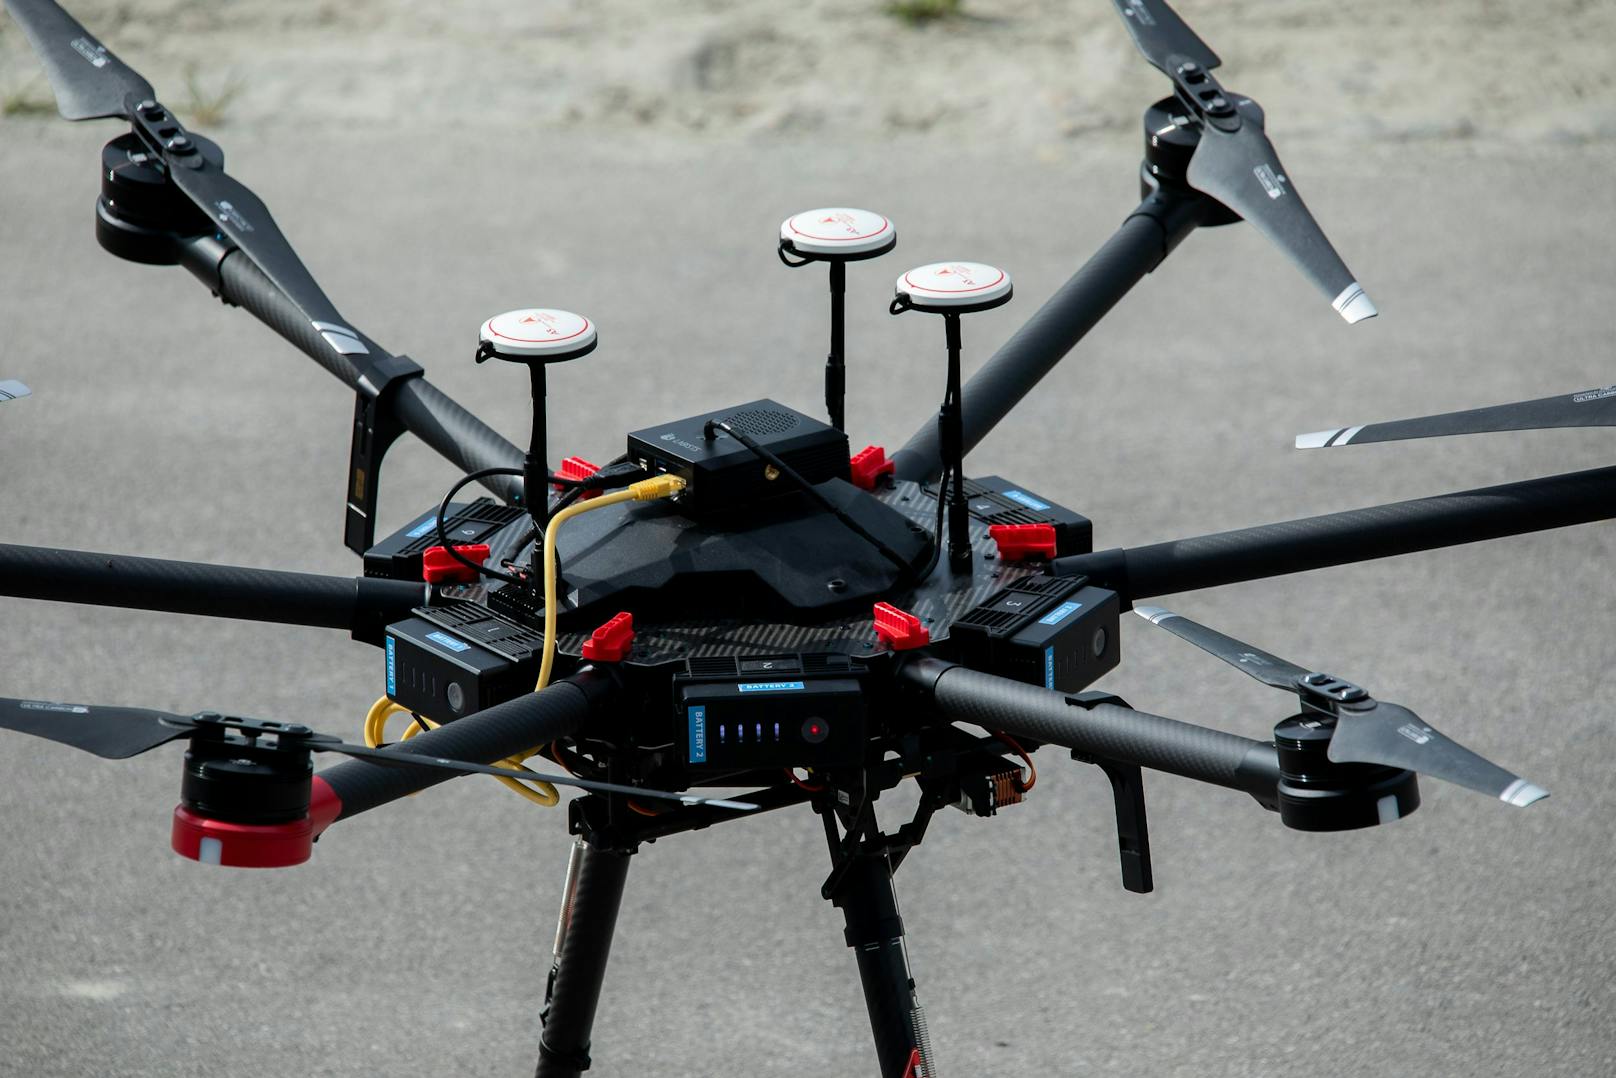 Entwickelt wurde die Drohne vom Robotik-Unternehmen Unmanned Life als autonome Notfall-Such- und Rettungslösung